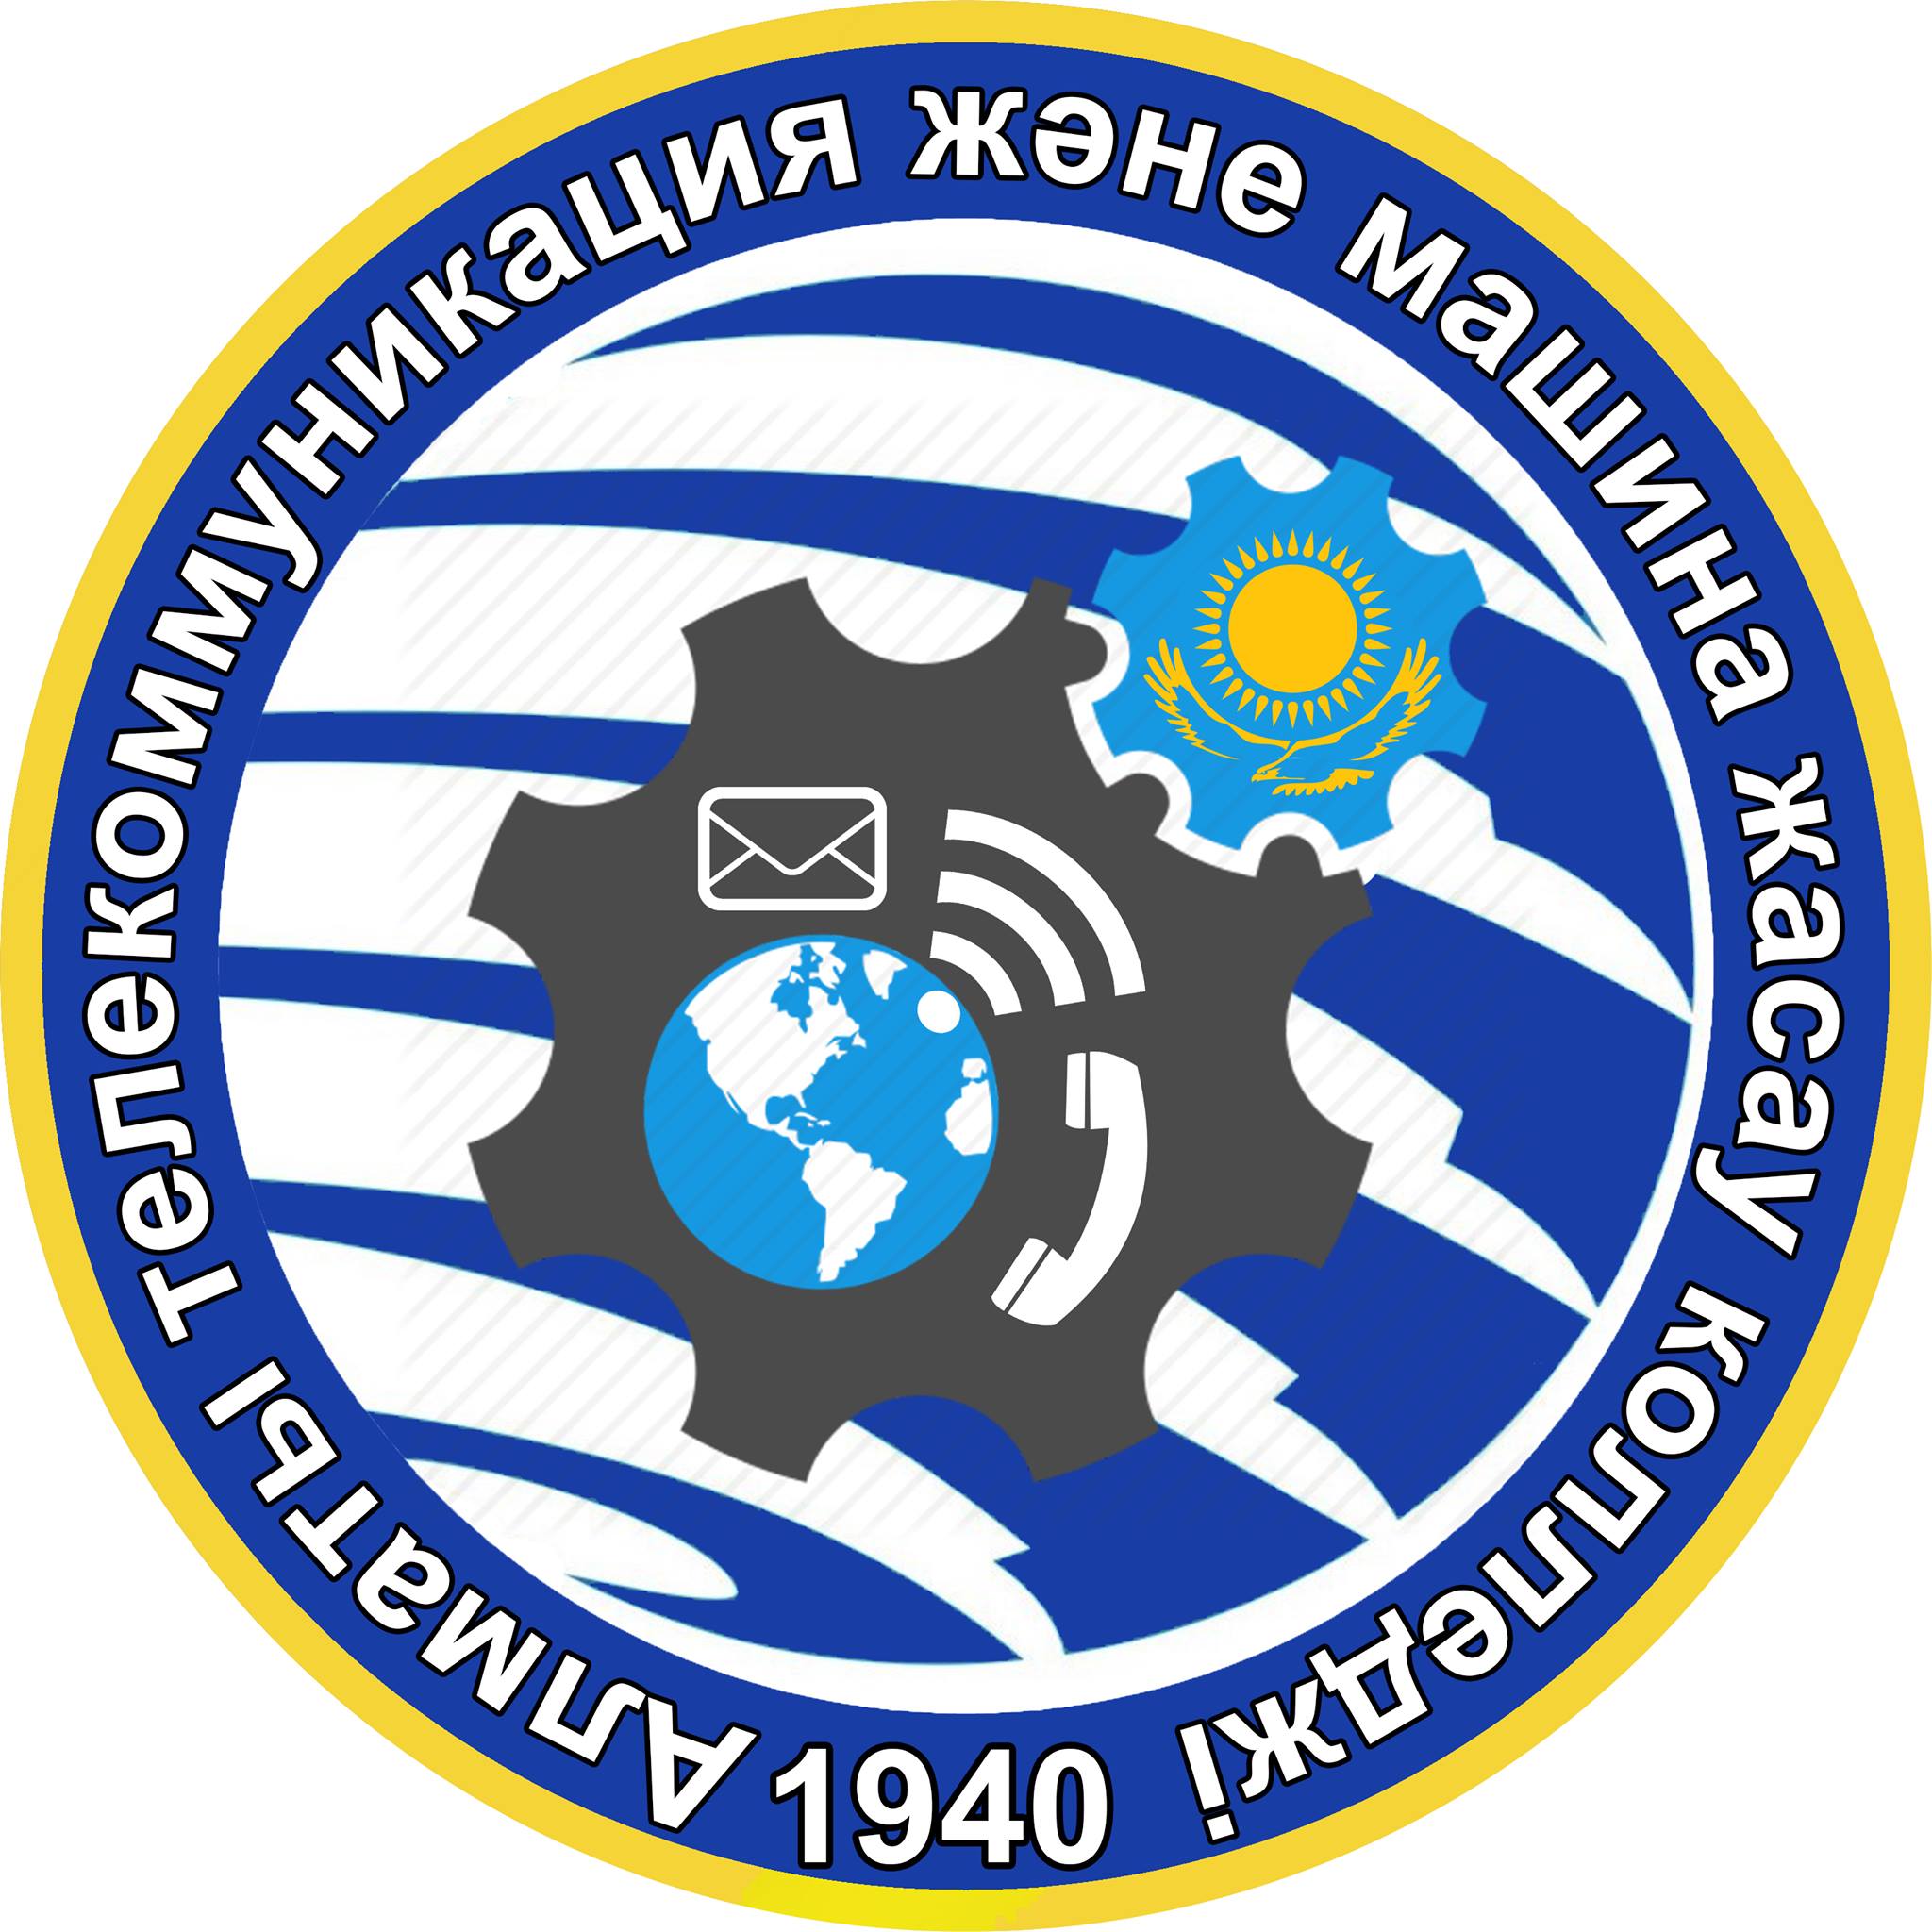 Алматинский колледж телекоммуникаций и машиностроения